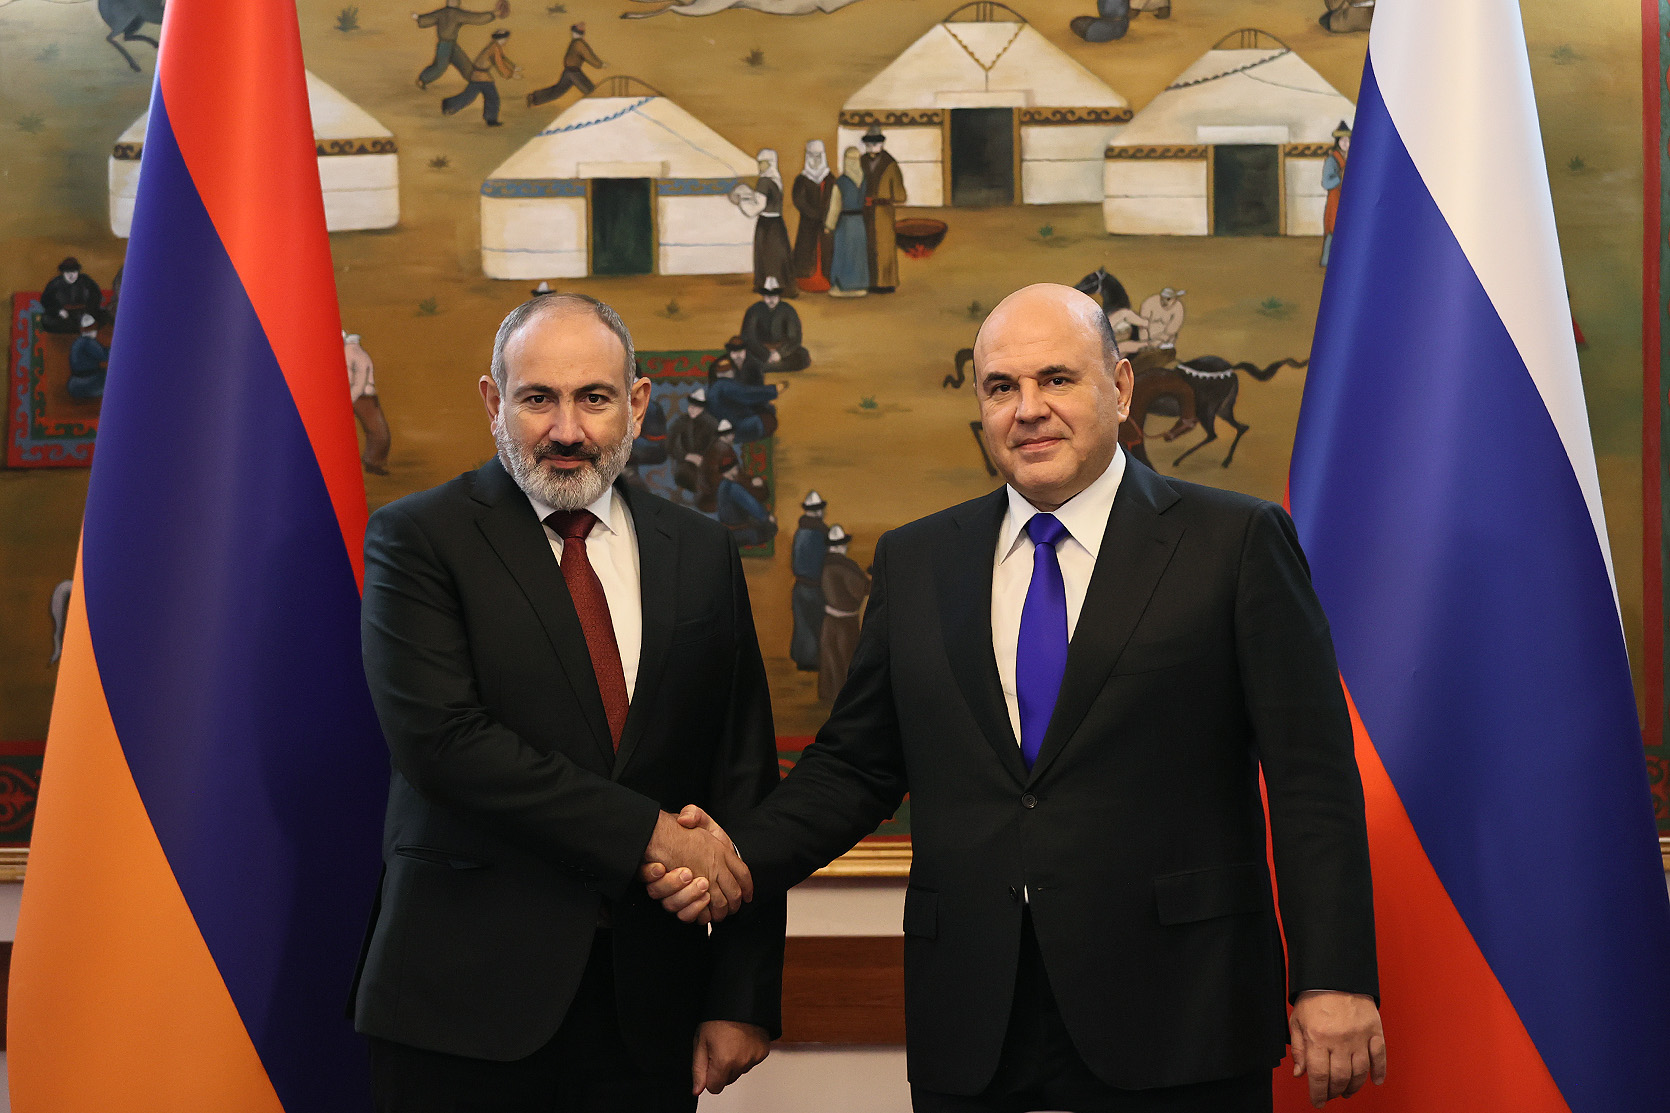 В первом полугодии текущего года товарооборот между Арменией и РФ вырос на 42%: состоялась встреча Никола Пашиняна и Михаила Мишустина